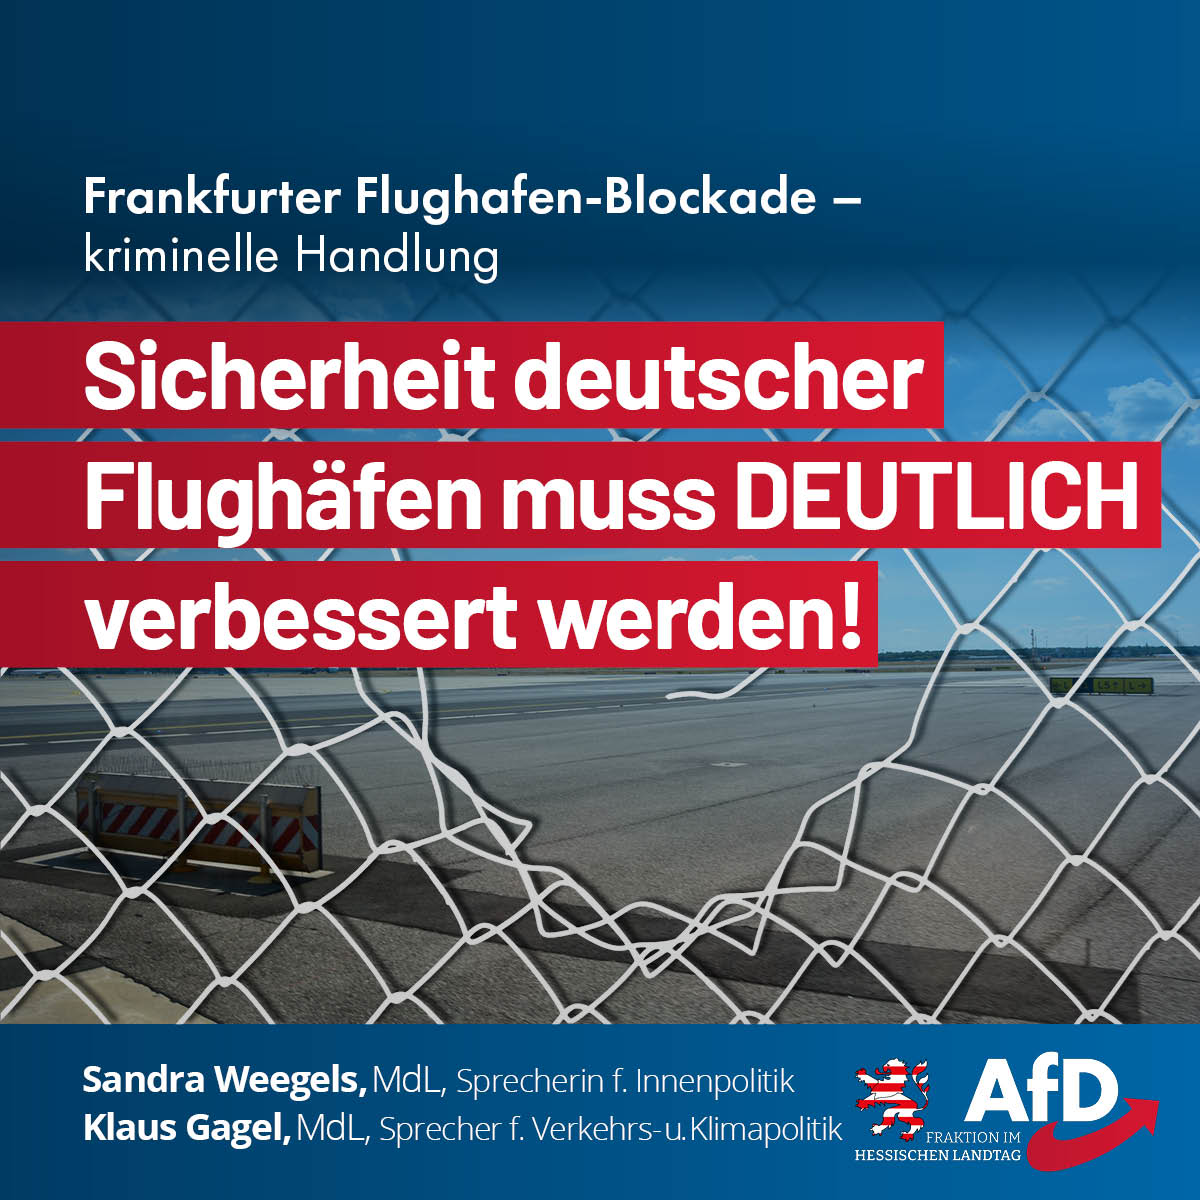 Mehr über den Artikel erfahren Flughafen-Blockade ist kriminelle Handlung: Die Sicherheit deutscher Flughäfen muss verbessert werden